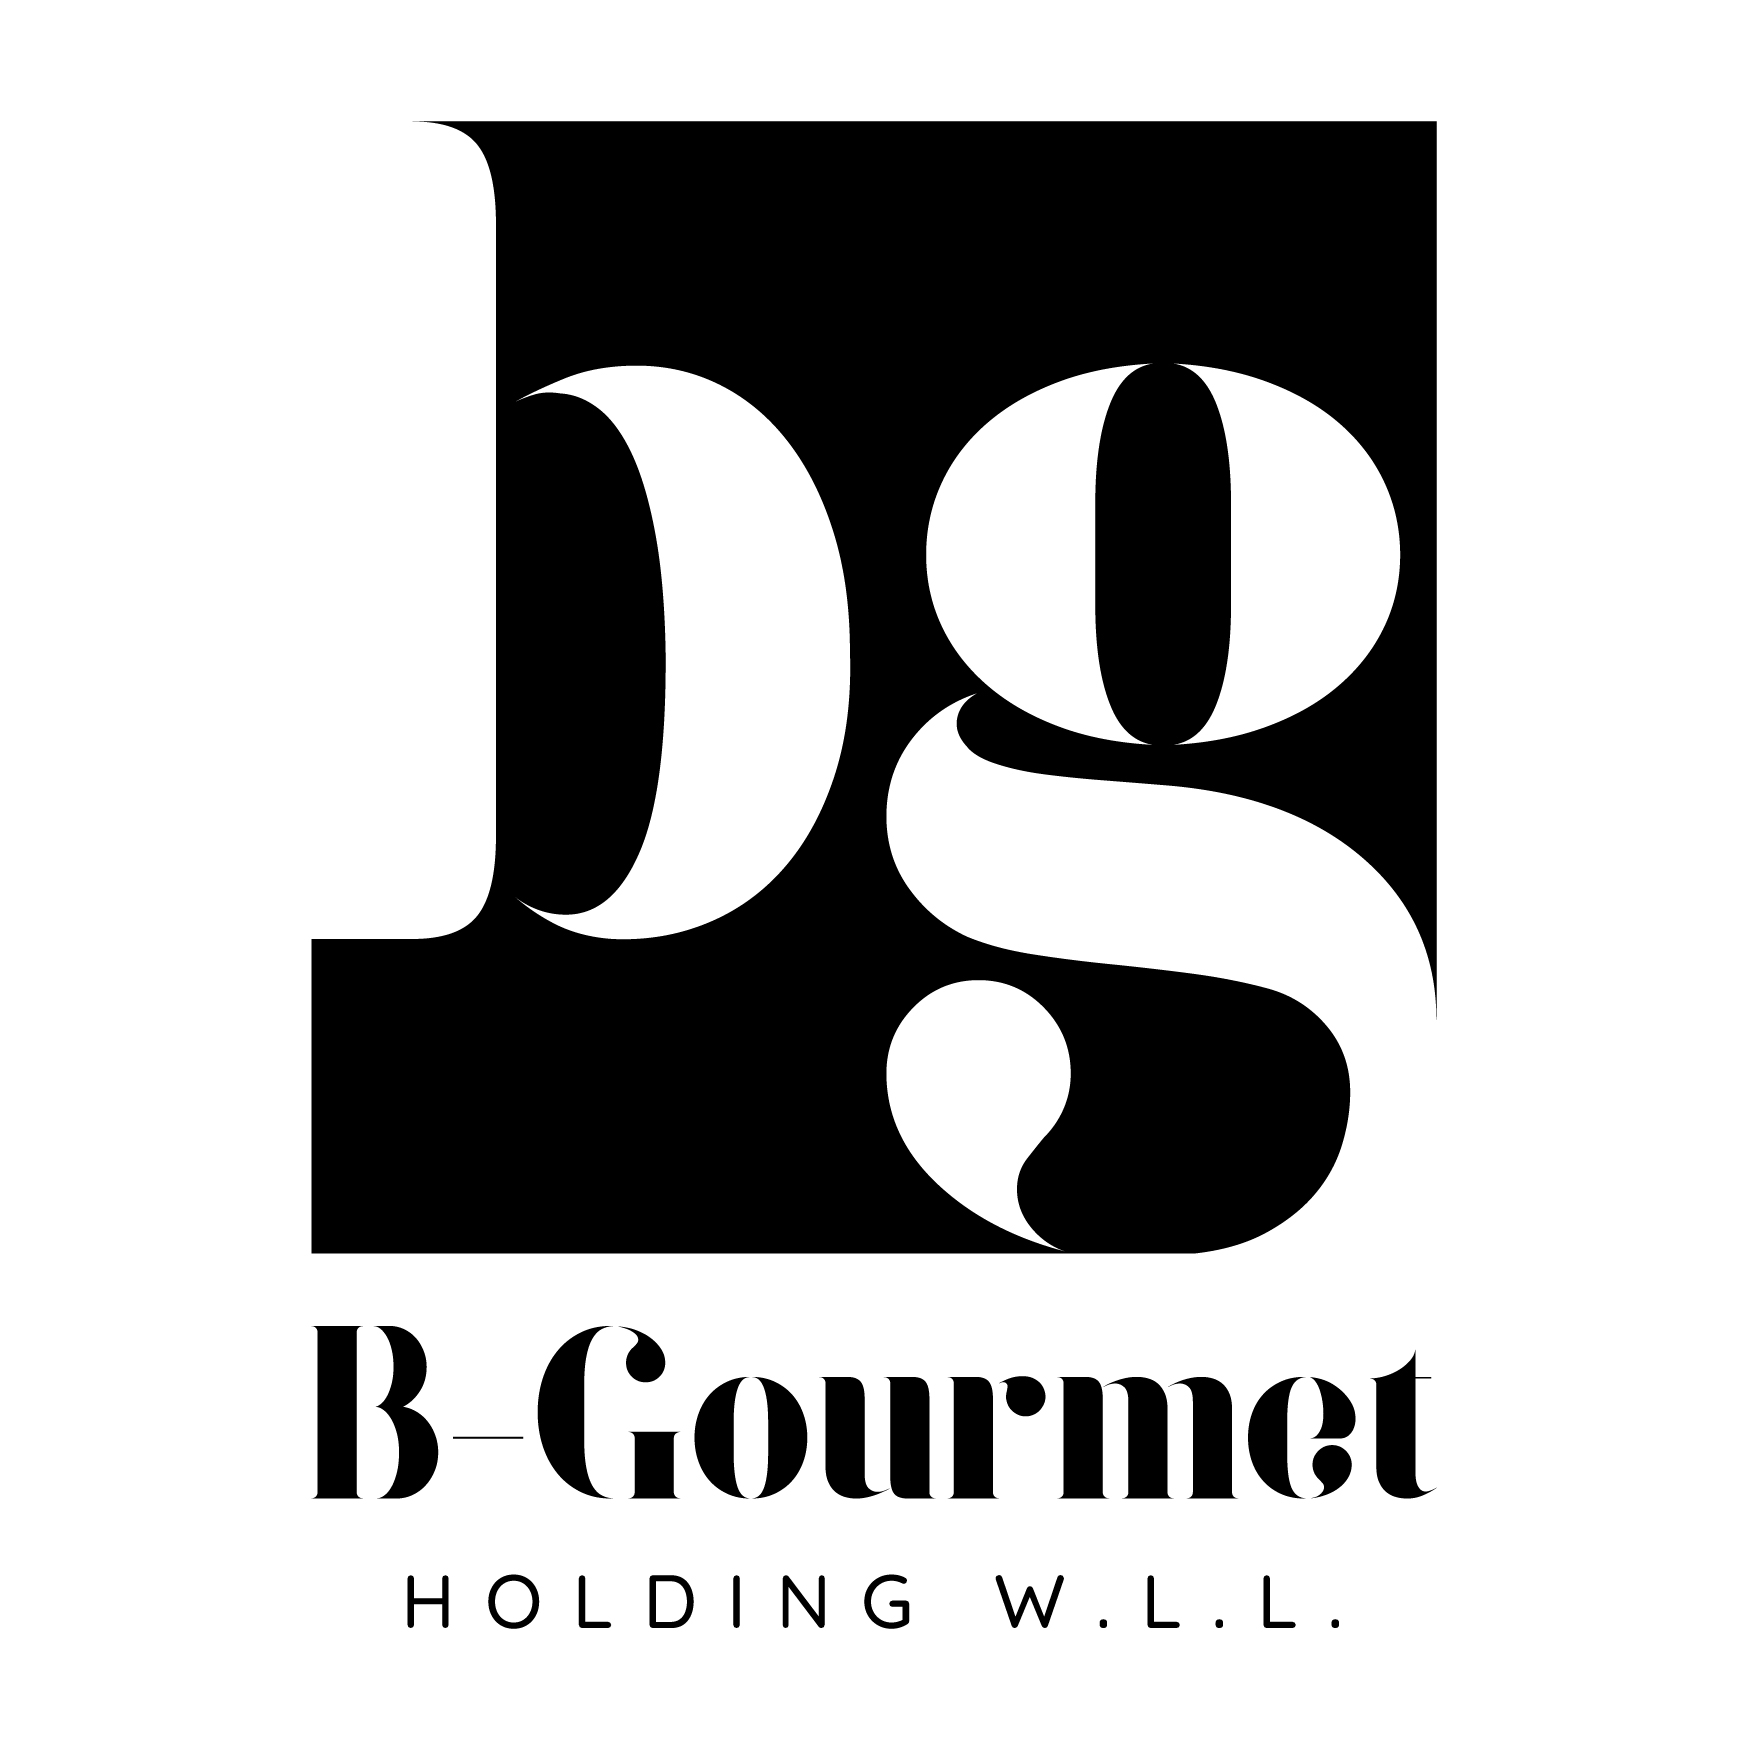 B-Gourmet Holding W.L.L.